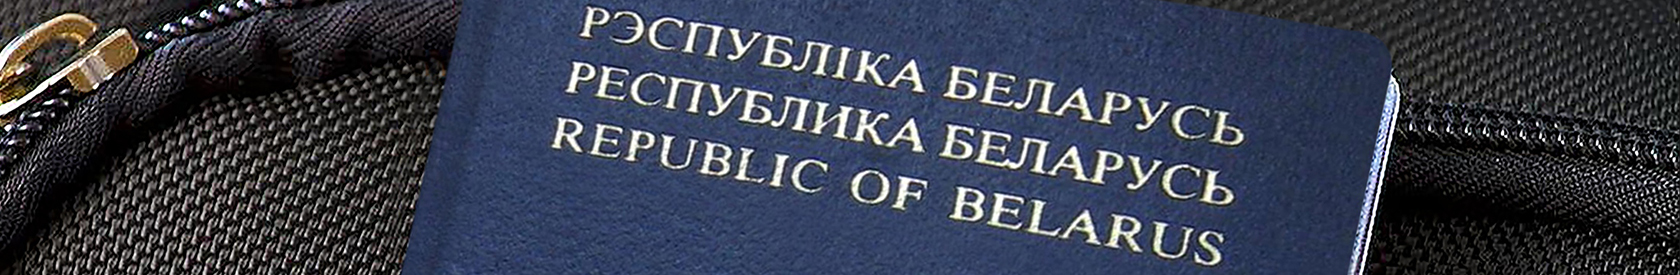 Belarusen im Ausland können Pässe nicht mehr ändern oder Vollmachten notariell beglaubigen lassen